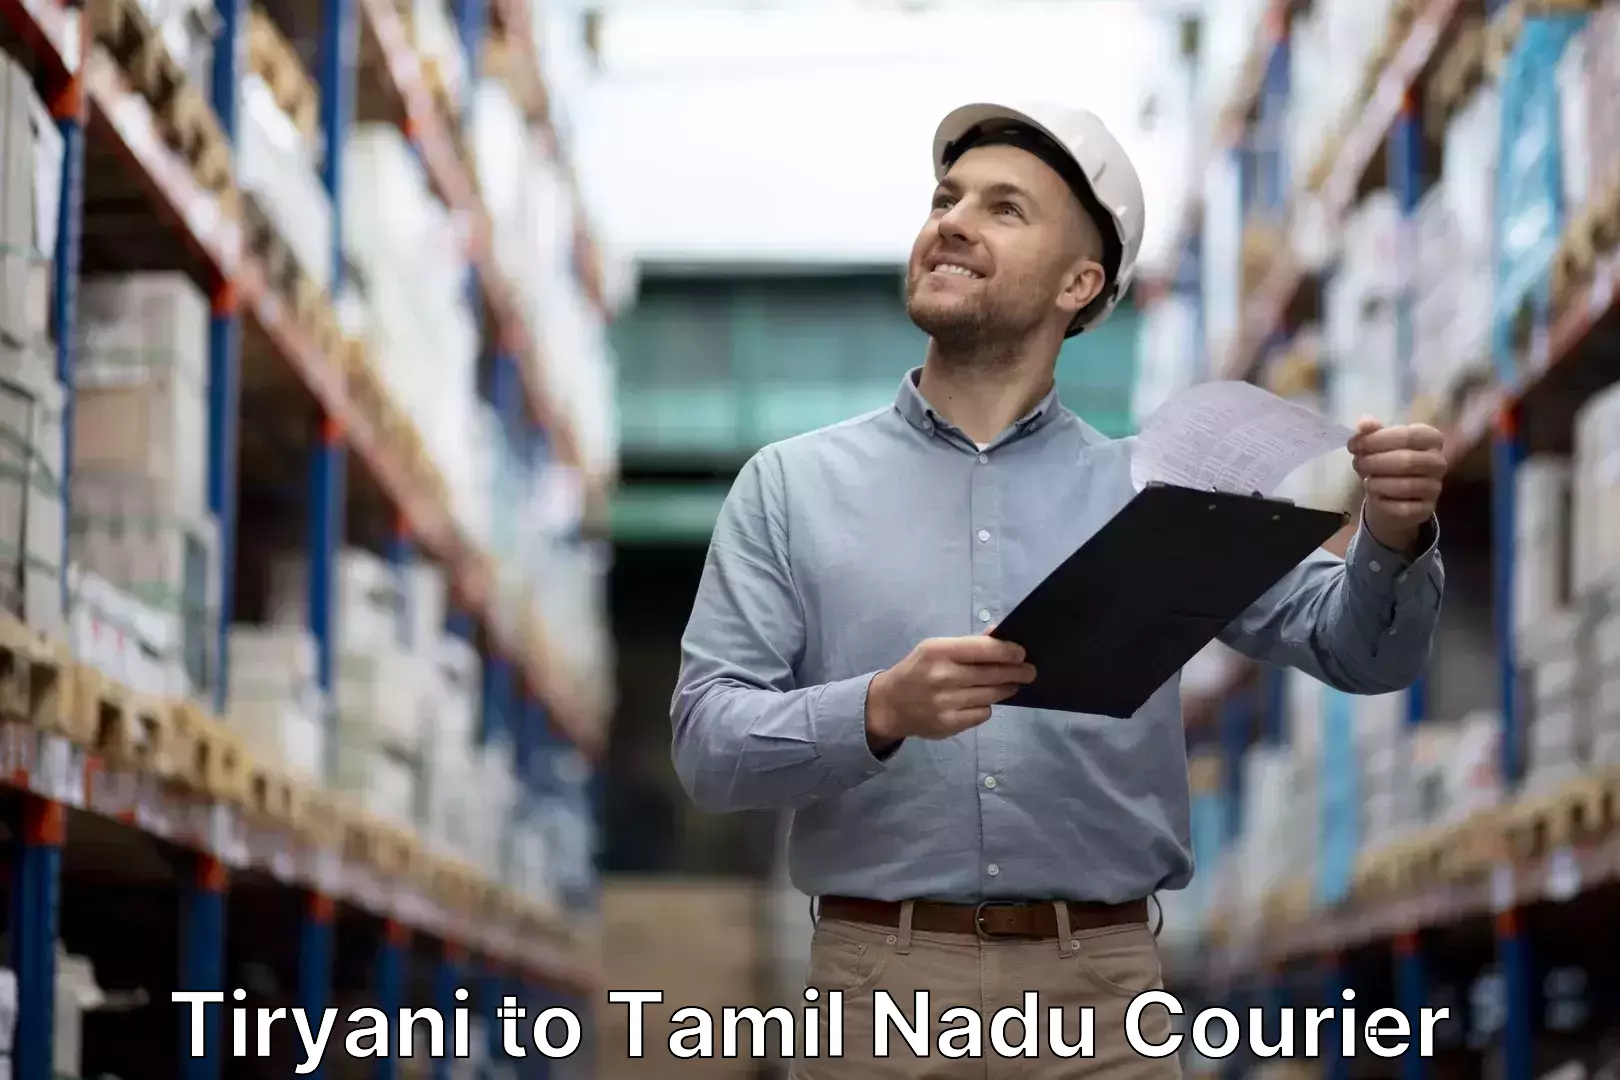 Luggage transit service Tiryani to Tamil Nadu